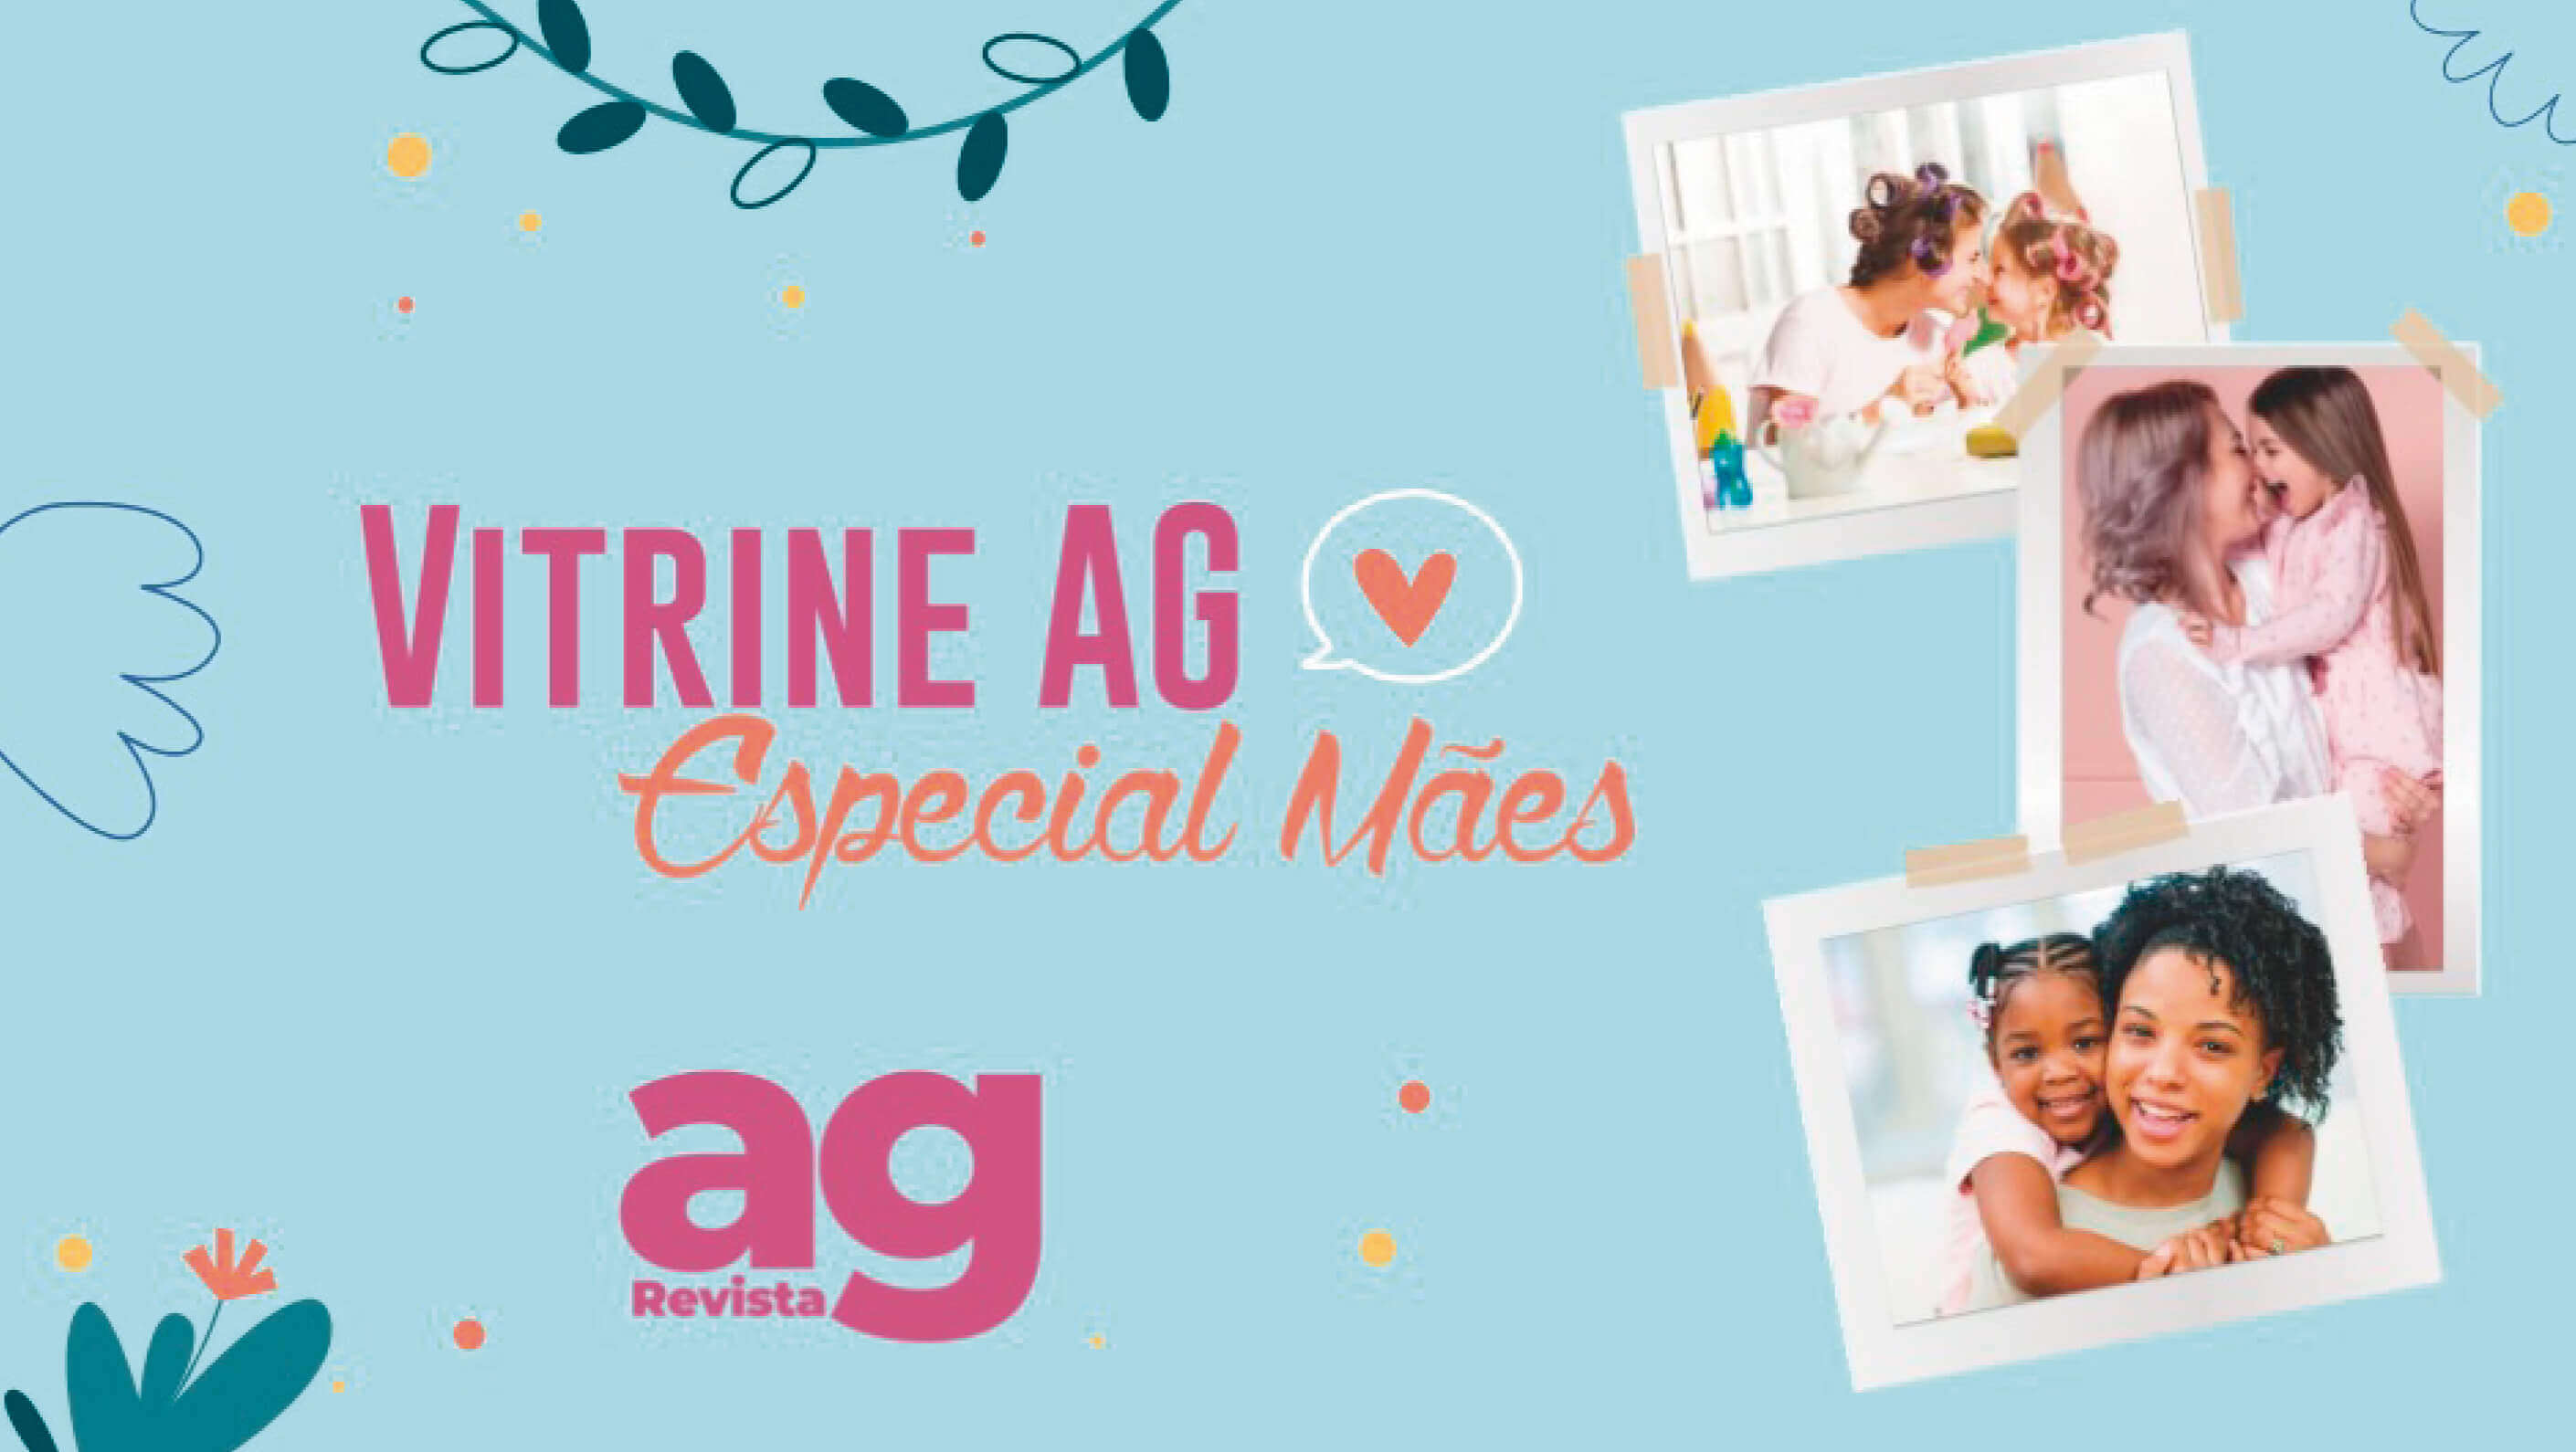 Conheça as promoções que a Vitrine AG para separou para o Dia das Mães